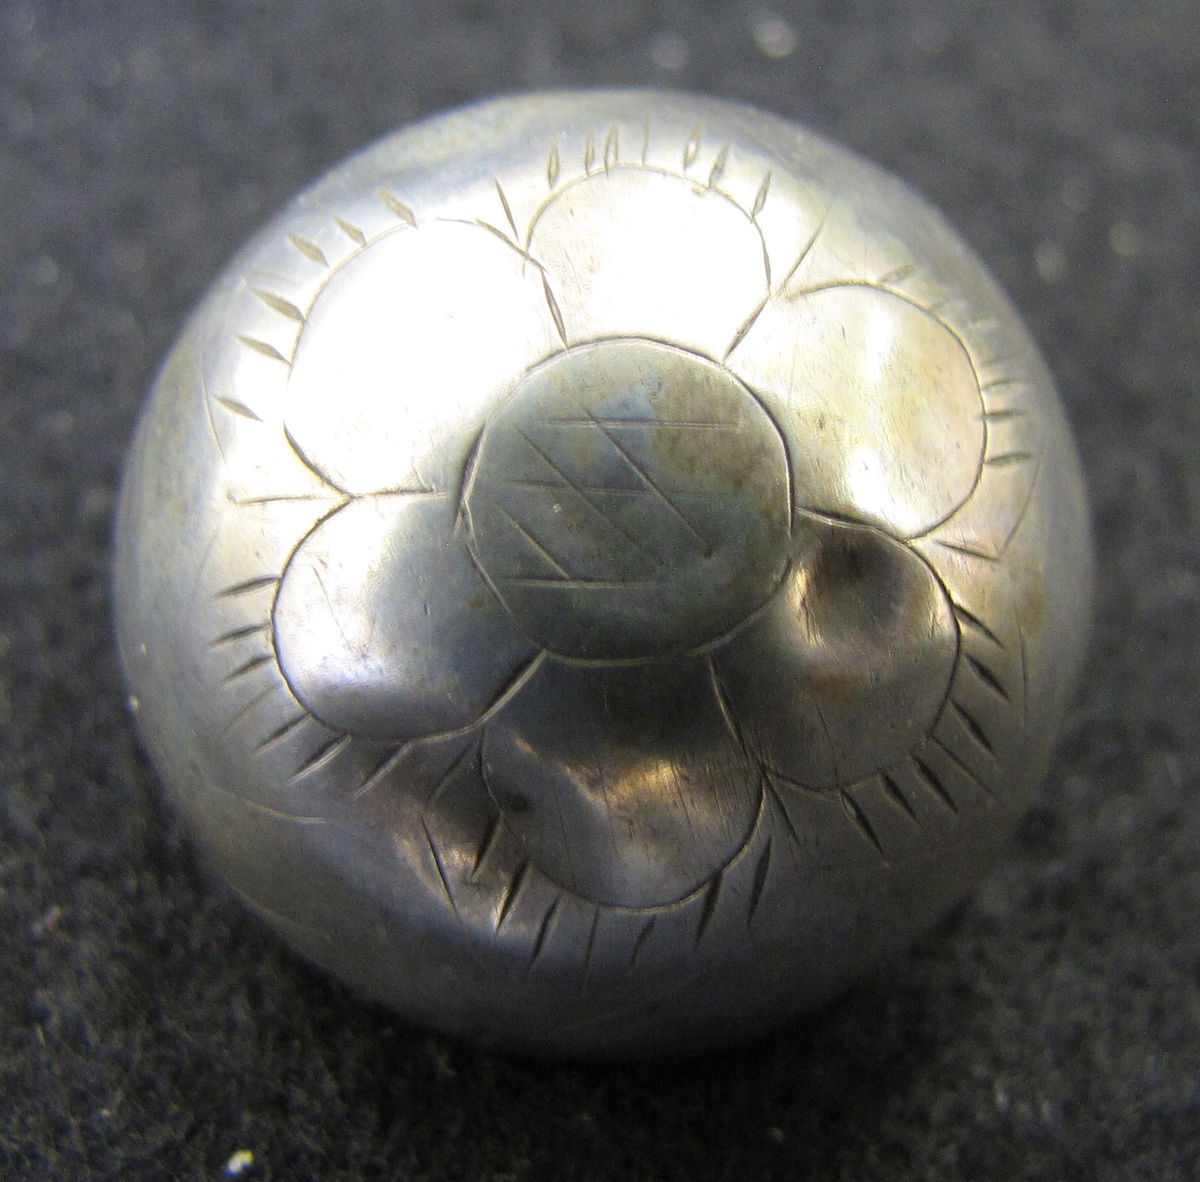 Halvrund, ihålig silverknapp med en enkel ingraverad dekor i form av en blomma. Enligt uppgift ur museets katalog 1904-05 härrör knappen från Norge.